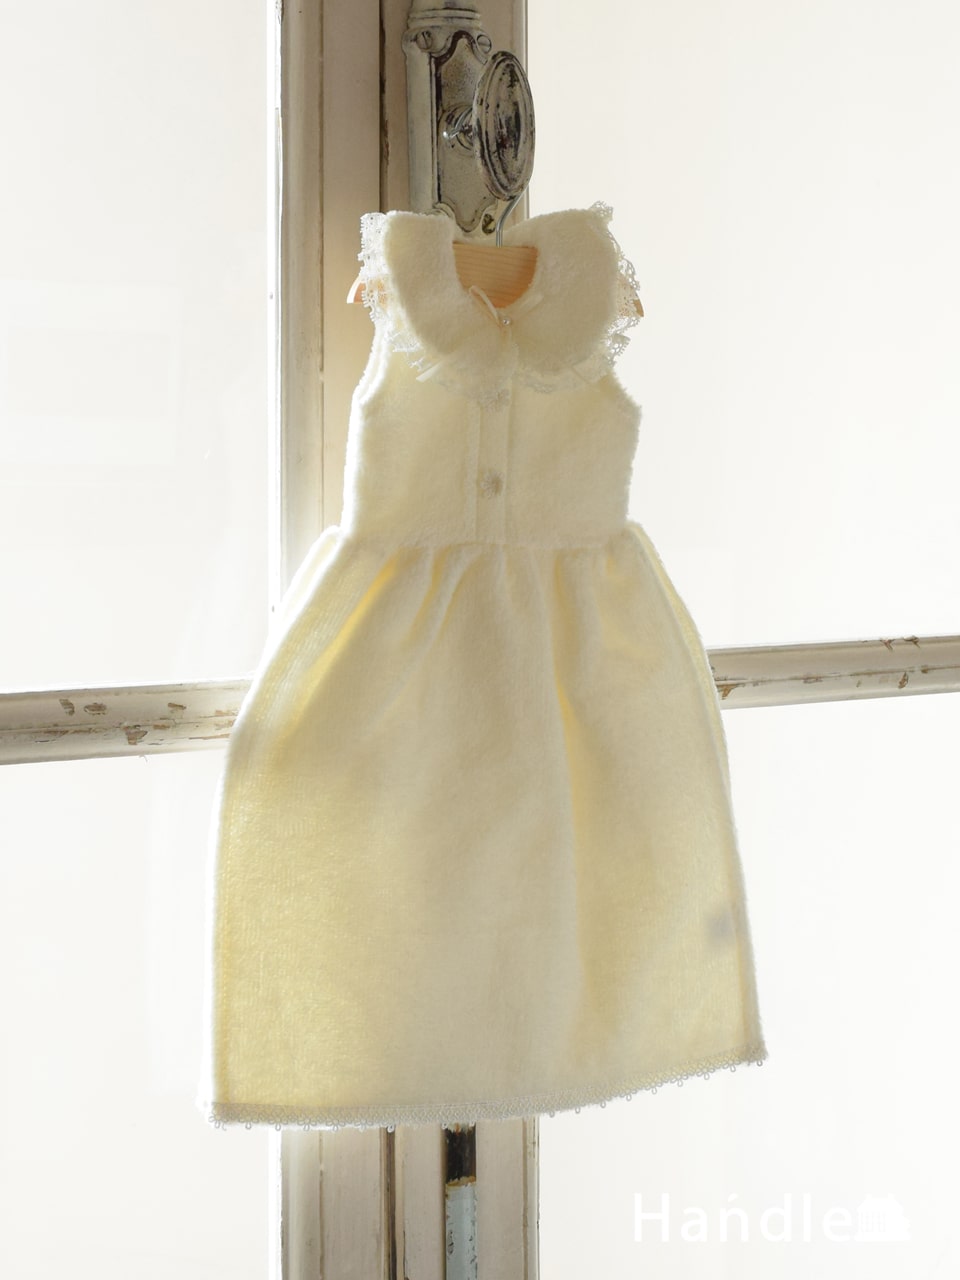 ベビードレス型のおしゃれなタオル、ハンガー付きのドレスタオル（IV） (n20-163)